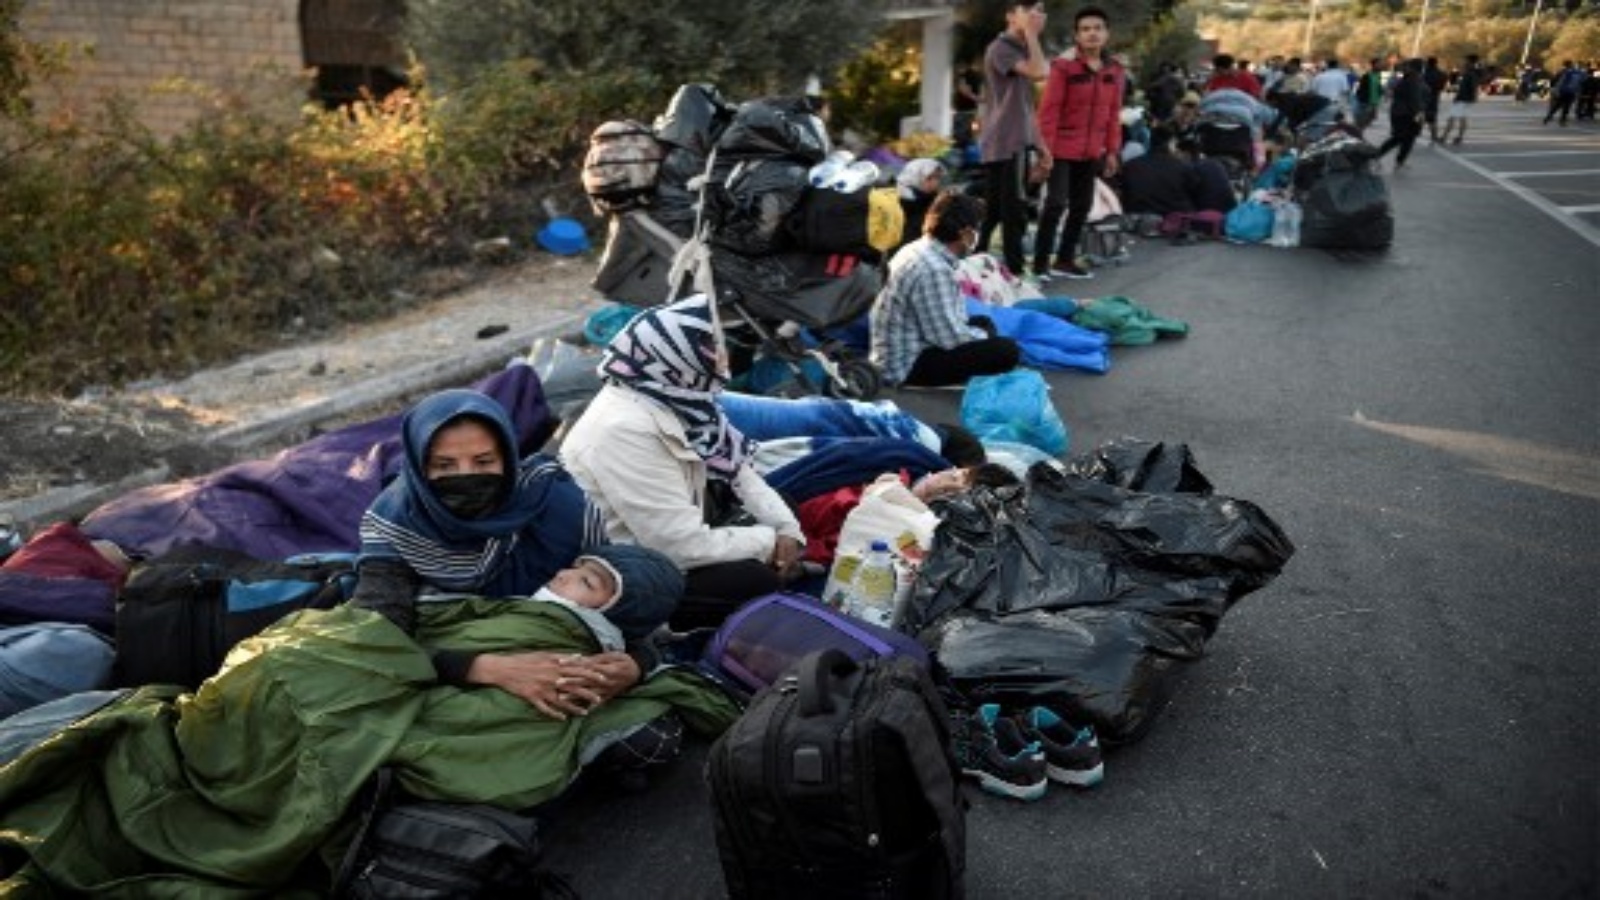 مهاجرون قضوا ليلتهم على الطريق بالقرب من ميتيليني، حيث دمر حريق أكبر مخيم للاجئين في موريا باليونان في جزيرة ليسبوس في وقت مبكر من 10 سبتمبر 2020.